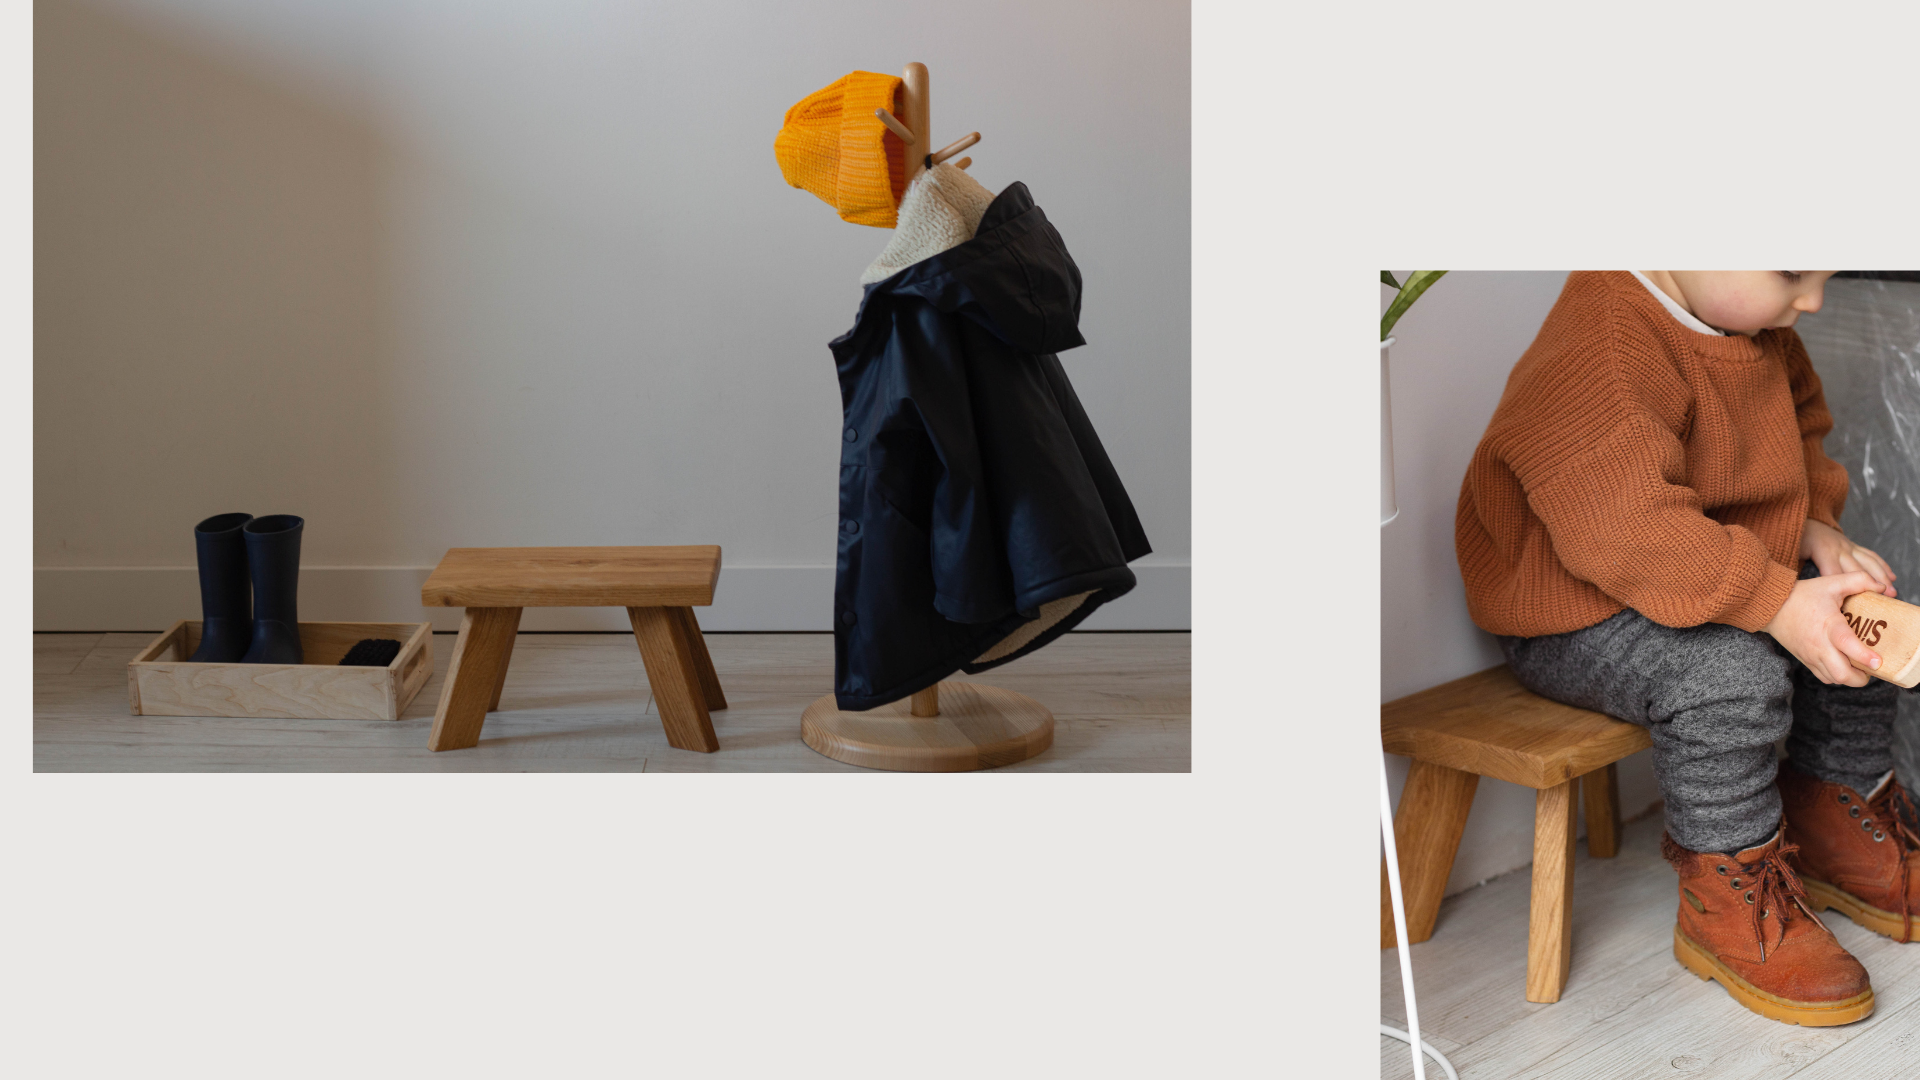 дитячий табурет, дерев'яна вішалка, дерев'яні меблі монтессорі